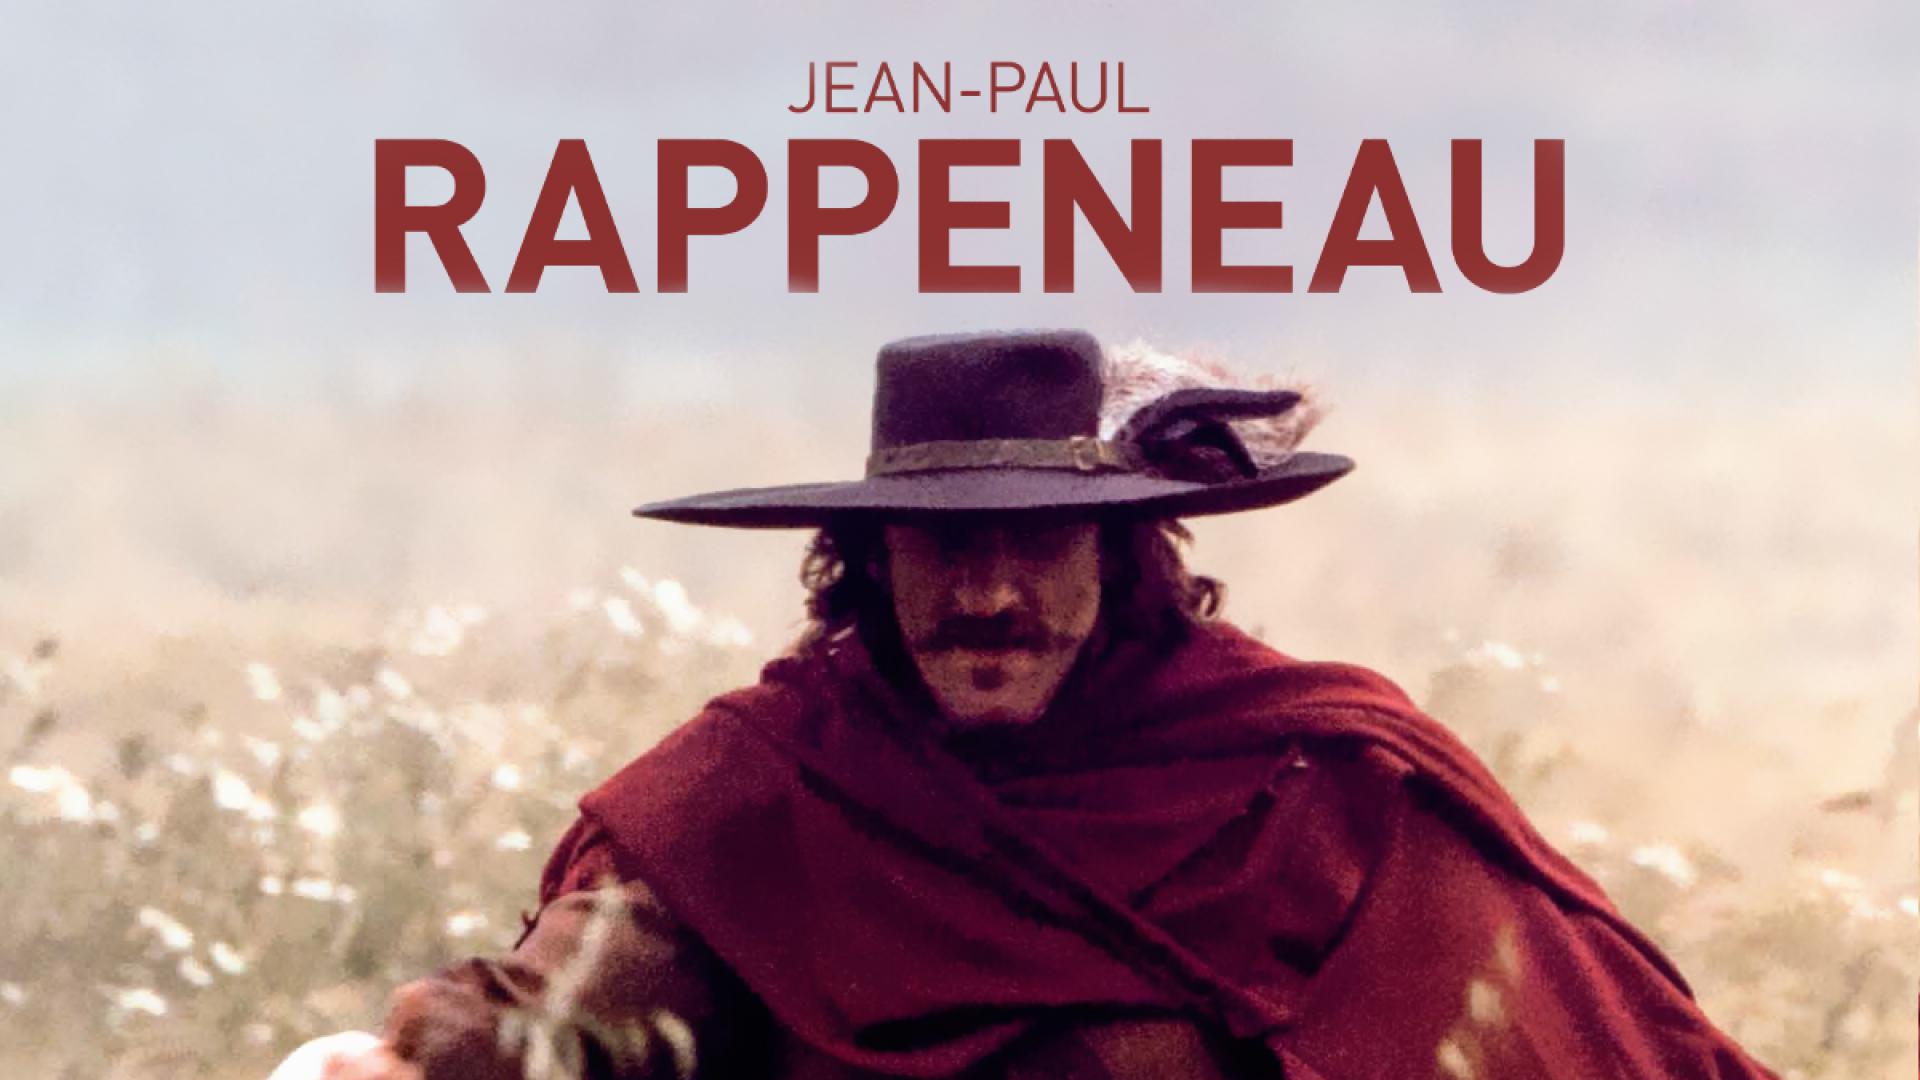 Jean-Paul RAPPENEAU